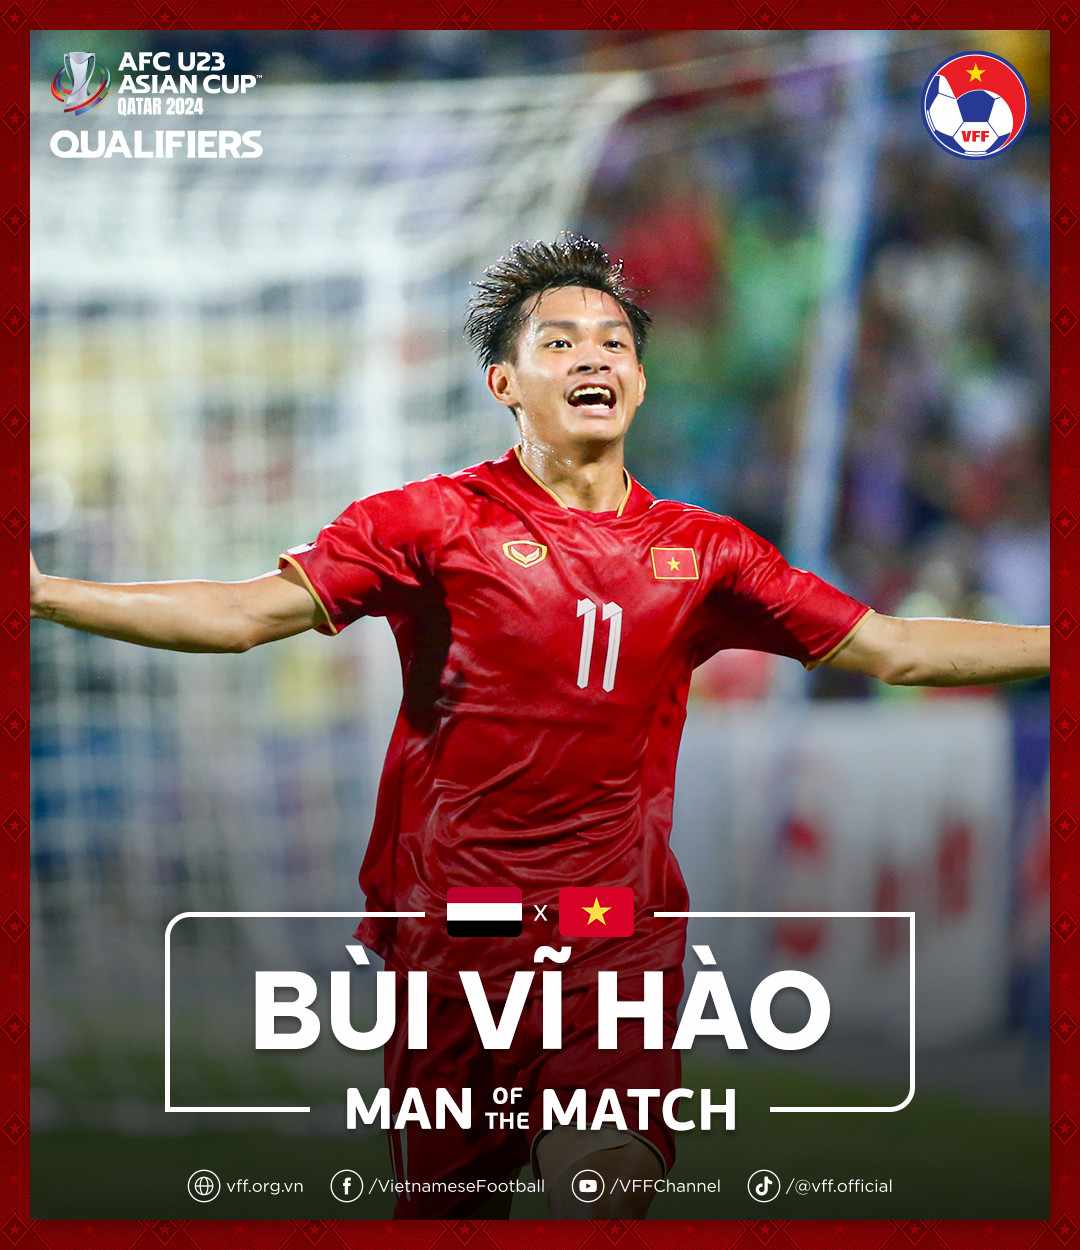 Vĩ Hào ghi bàn duy nhất giúp U23 Việt Nam thắng trận. Ảnh: VFF